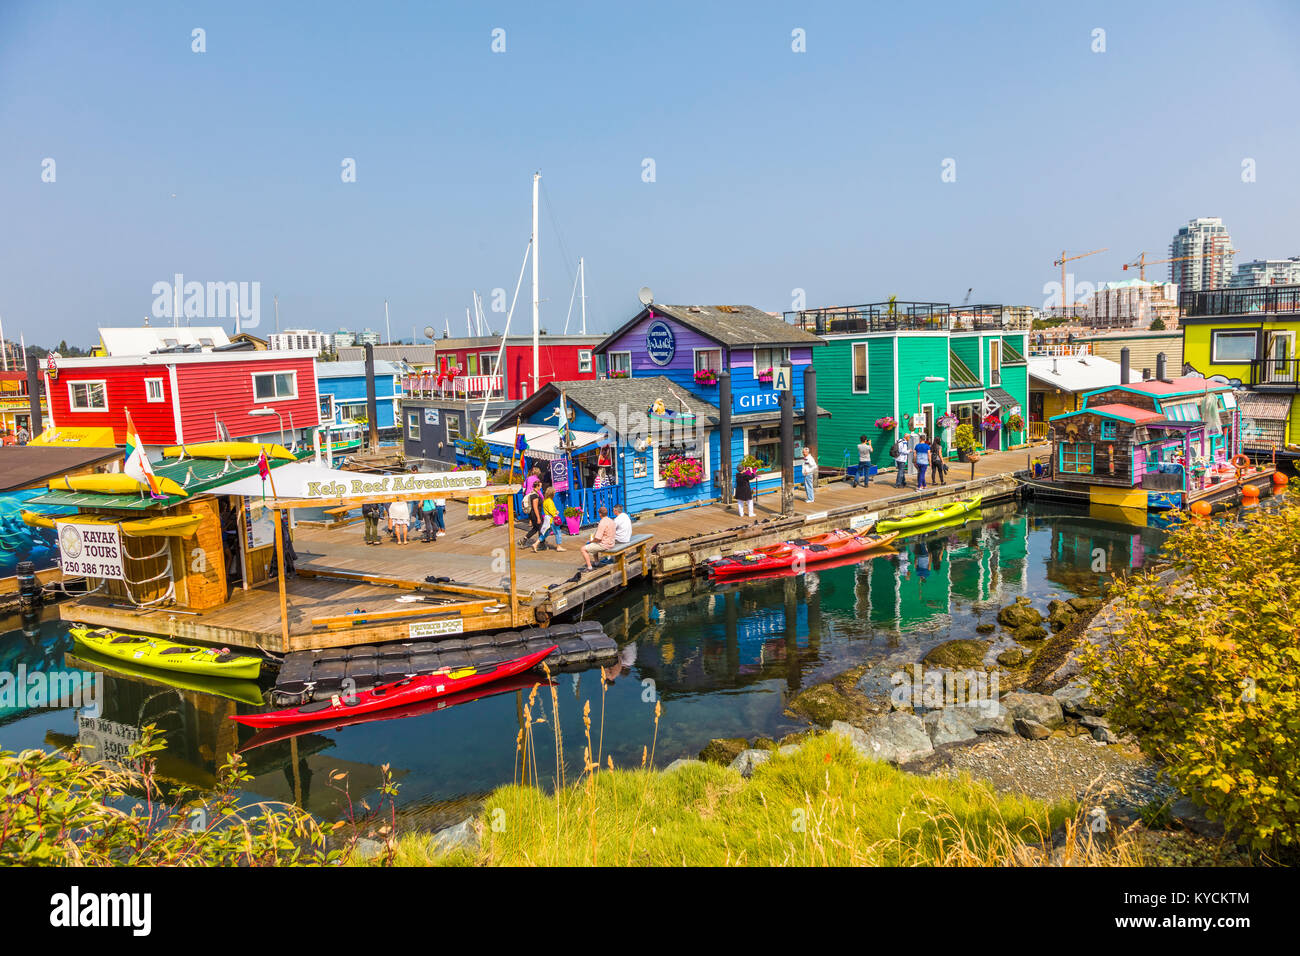 Fisherman's Wharf en Victoria, Canadá, una atracción turística con quioscos de comida, tiendas y hogares de flotación o houseboats Foto de stock